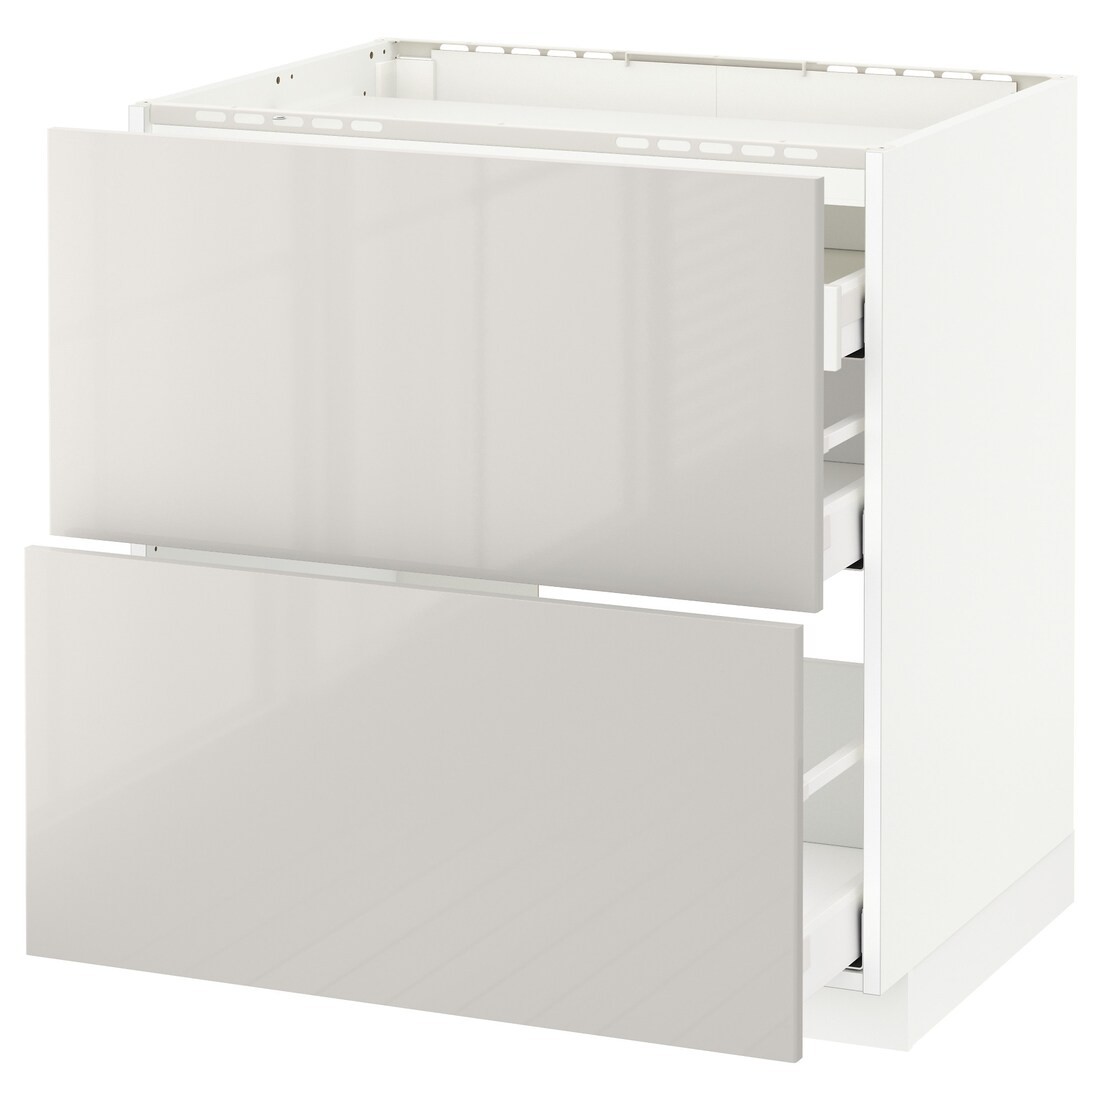 IKEA METOD МЕТОД / MAXIMERA МАКСИМЕРА Напольный шкаф с ящиками, белый / Ringhult светло-серый, 80x60 см 29142438 291.424.38